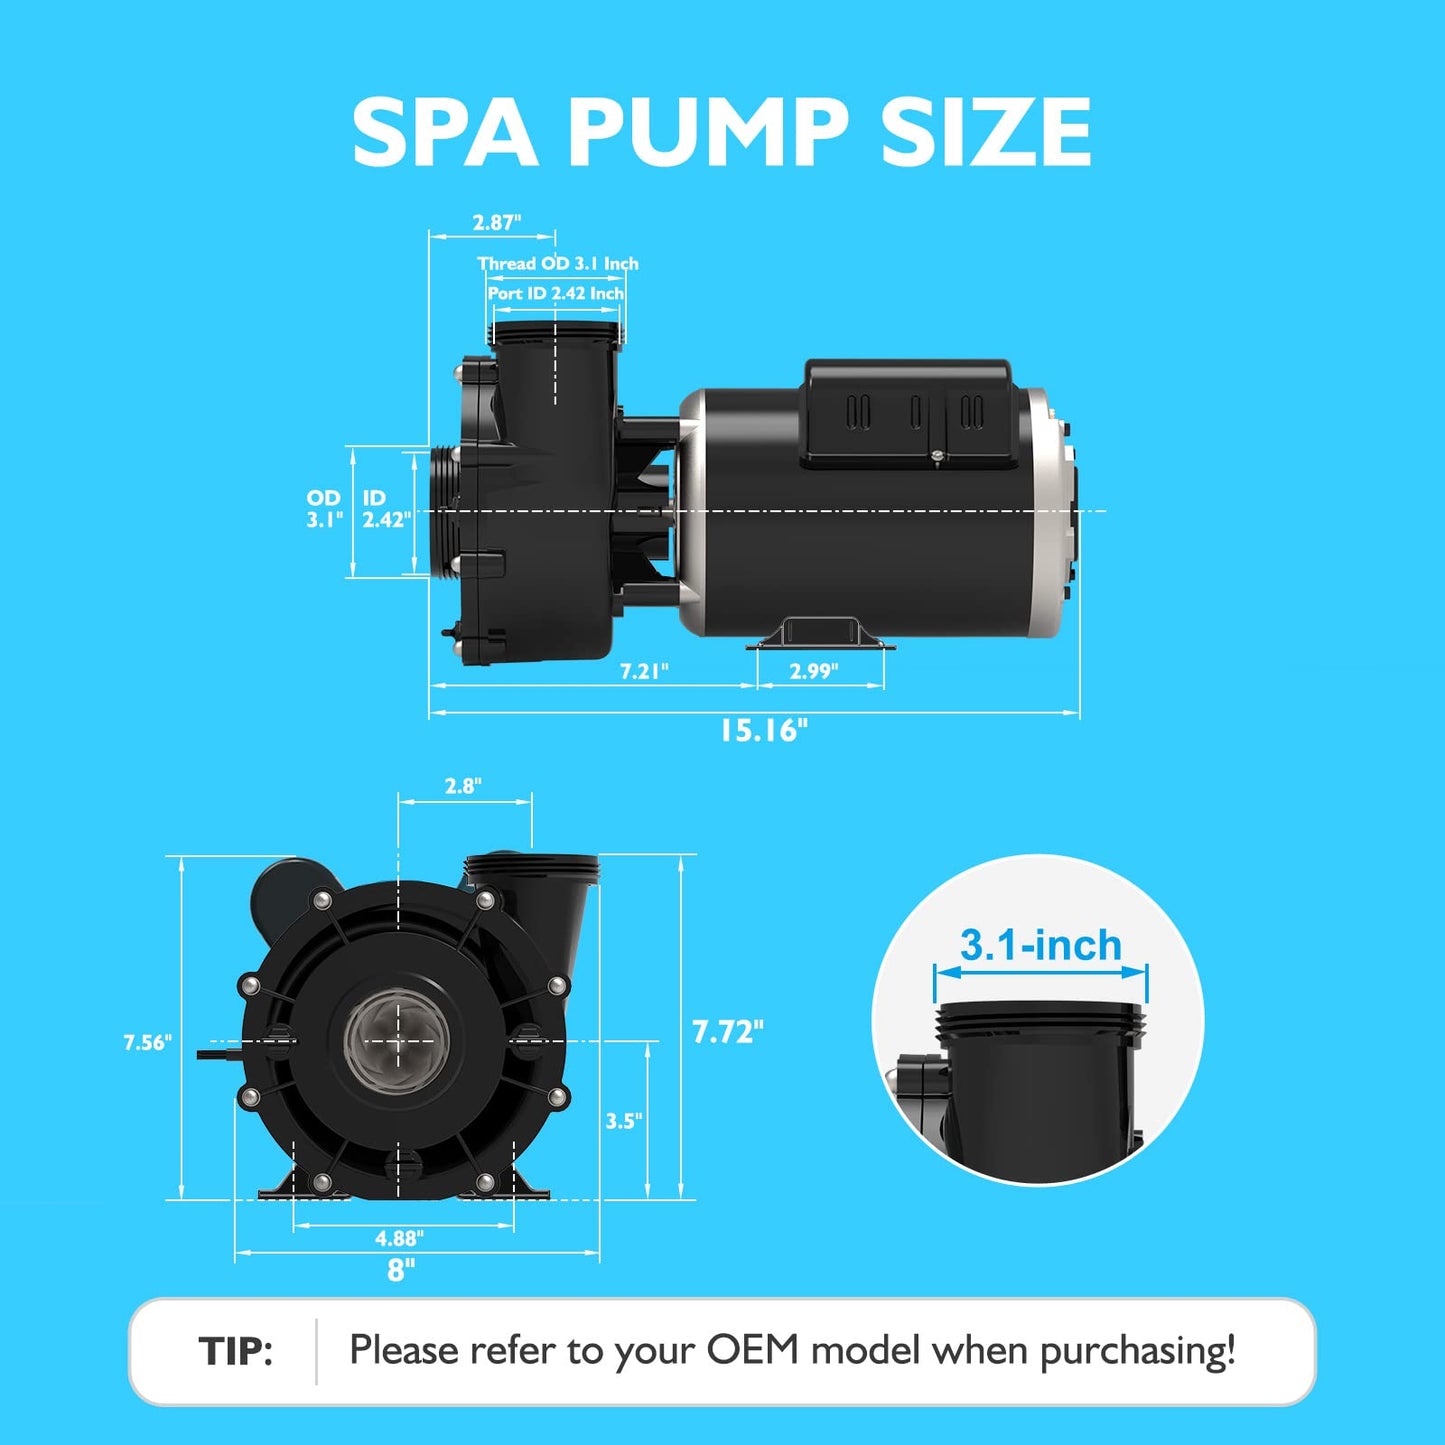 Pompe SPA LINGXIAO, pompe SPA 2 vitesses pour bain à remous - Pompe SPA 1.5HP LX, 115V, port 2 ", cadre 48 - (modèle : 48WUA1001C-II)